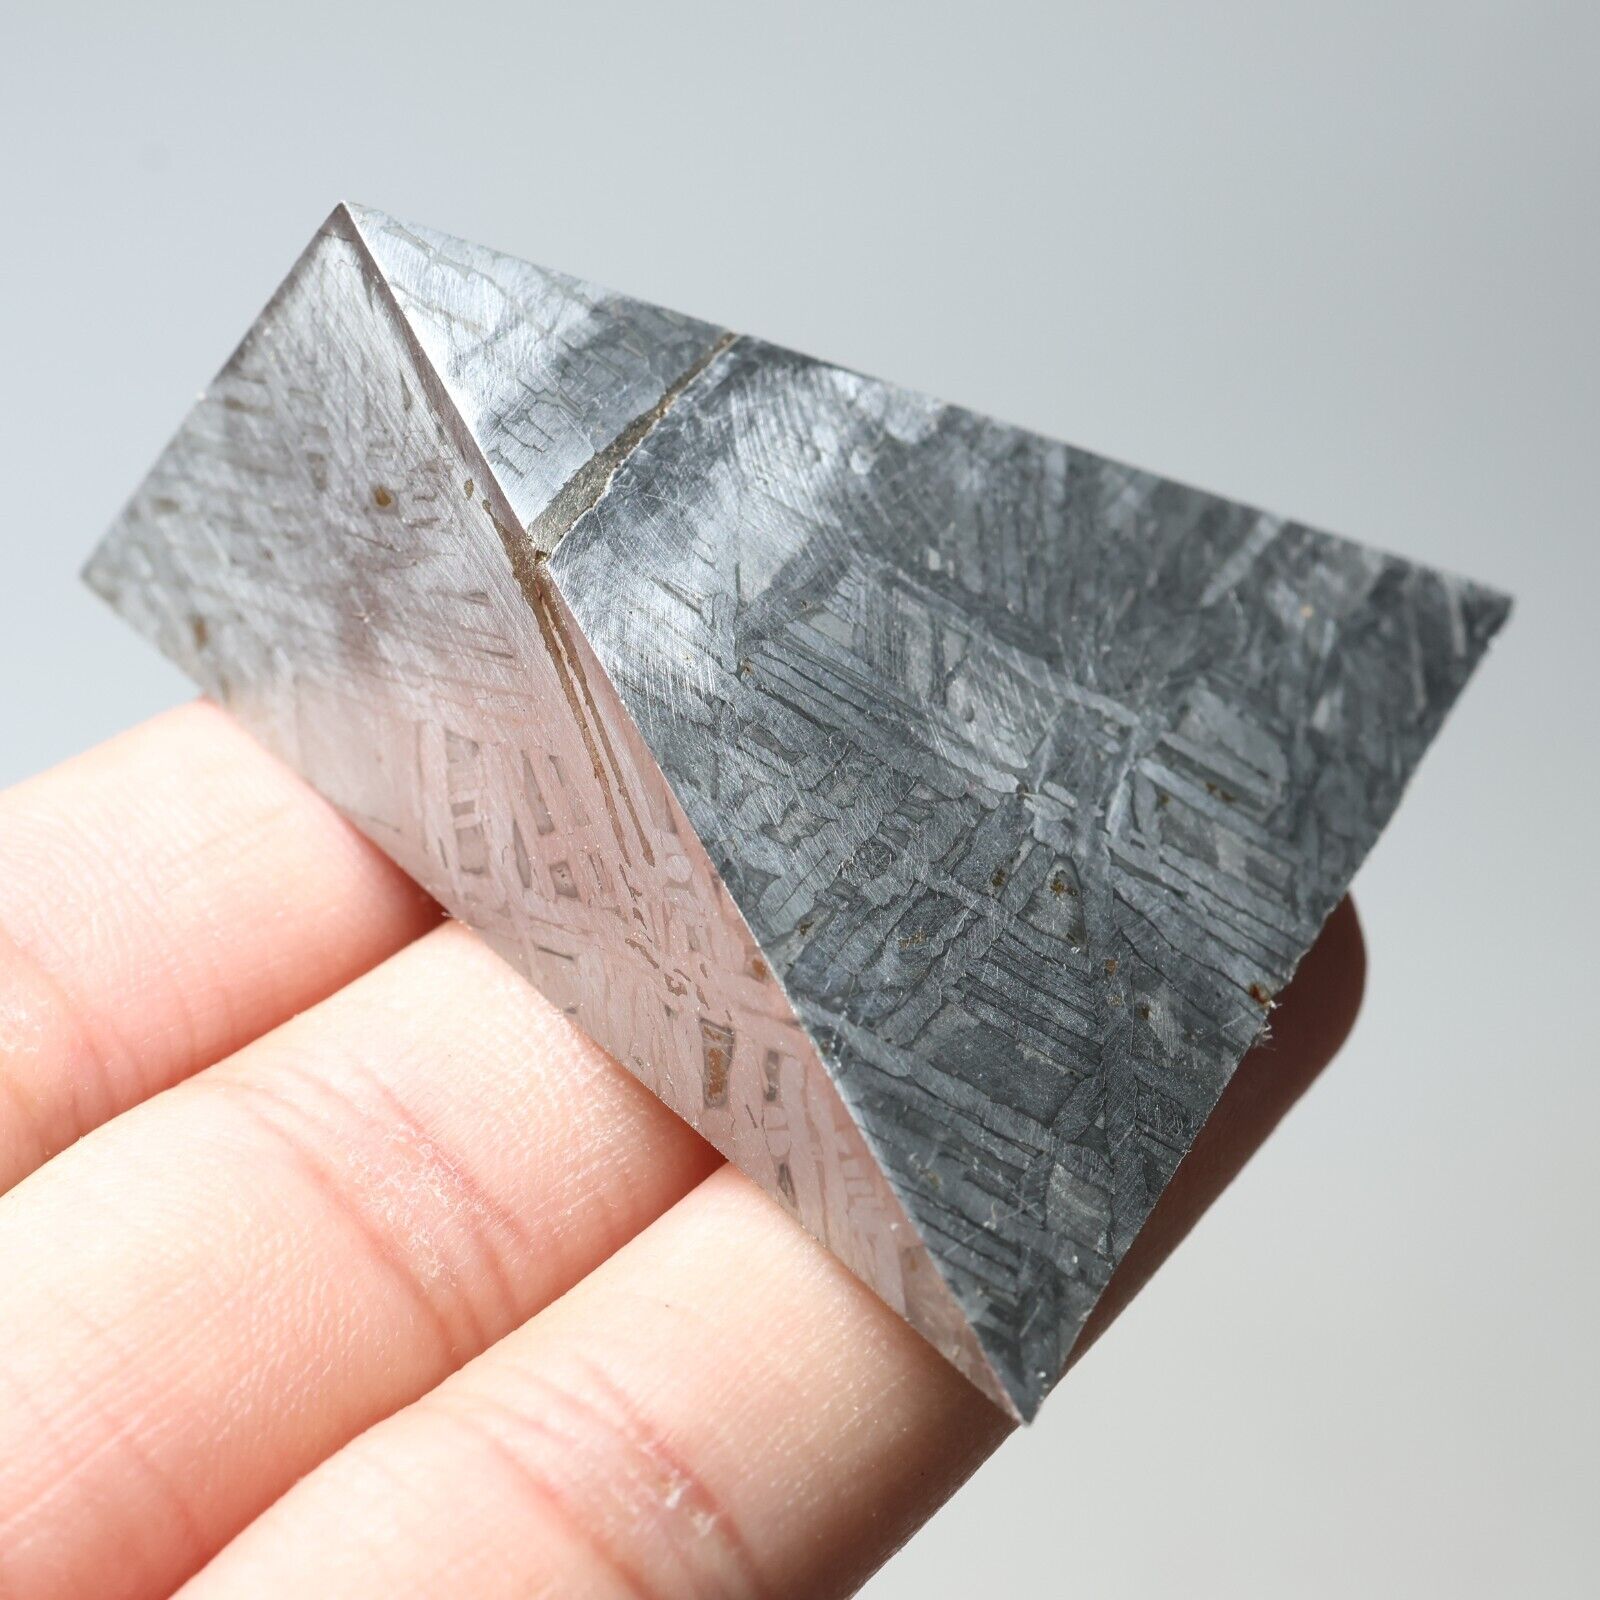 82g  Muonionalusta meteorite part slice C7253